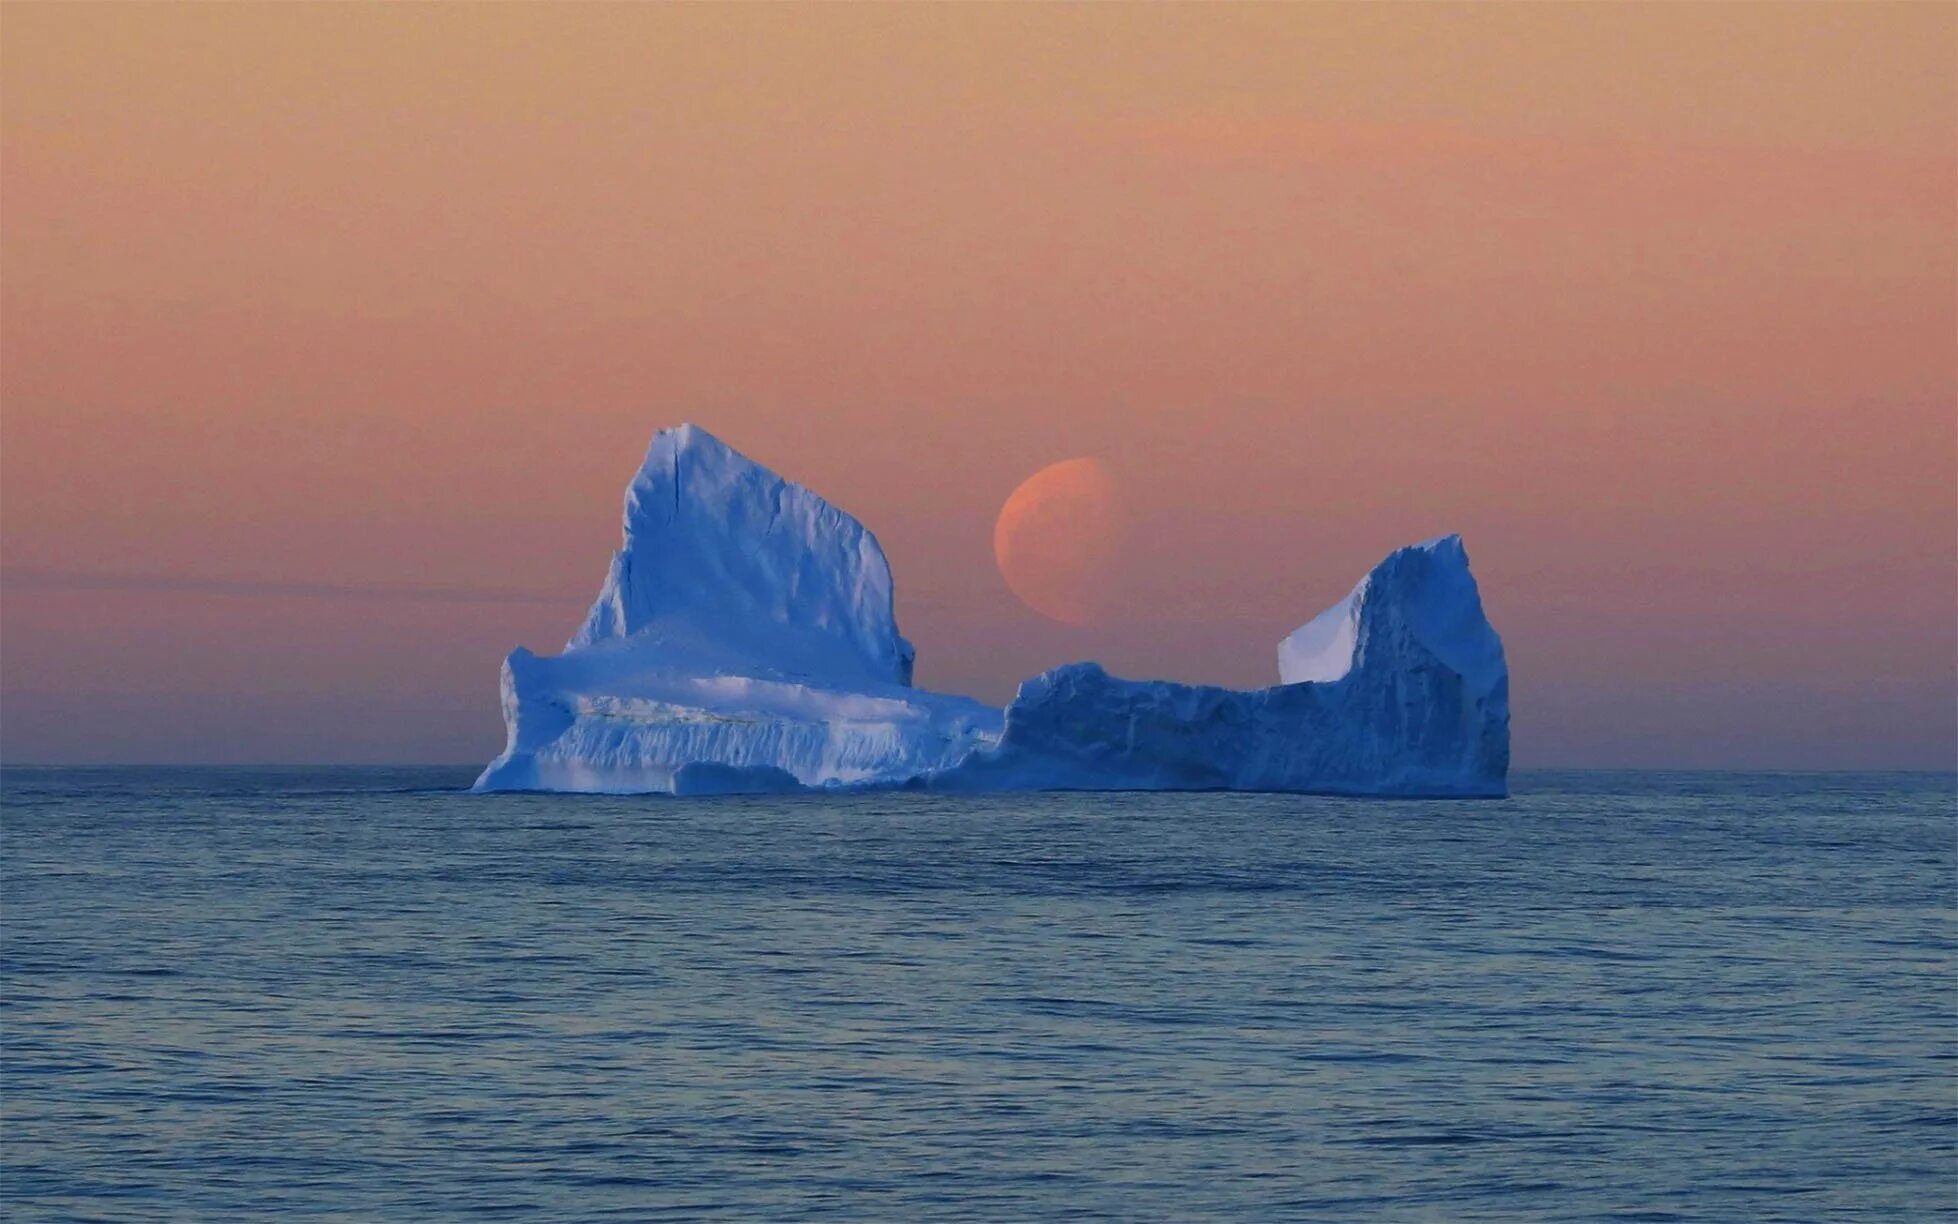 Назвали южным океаном. Южный Ледовитый океан. Море Росса Антарктида. Мыс Моррис-Джесуп. Южный океан айсберги.